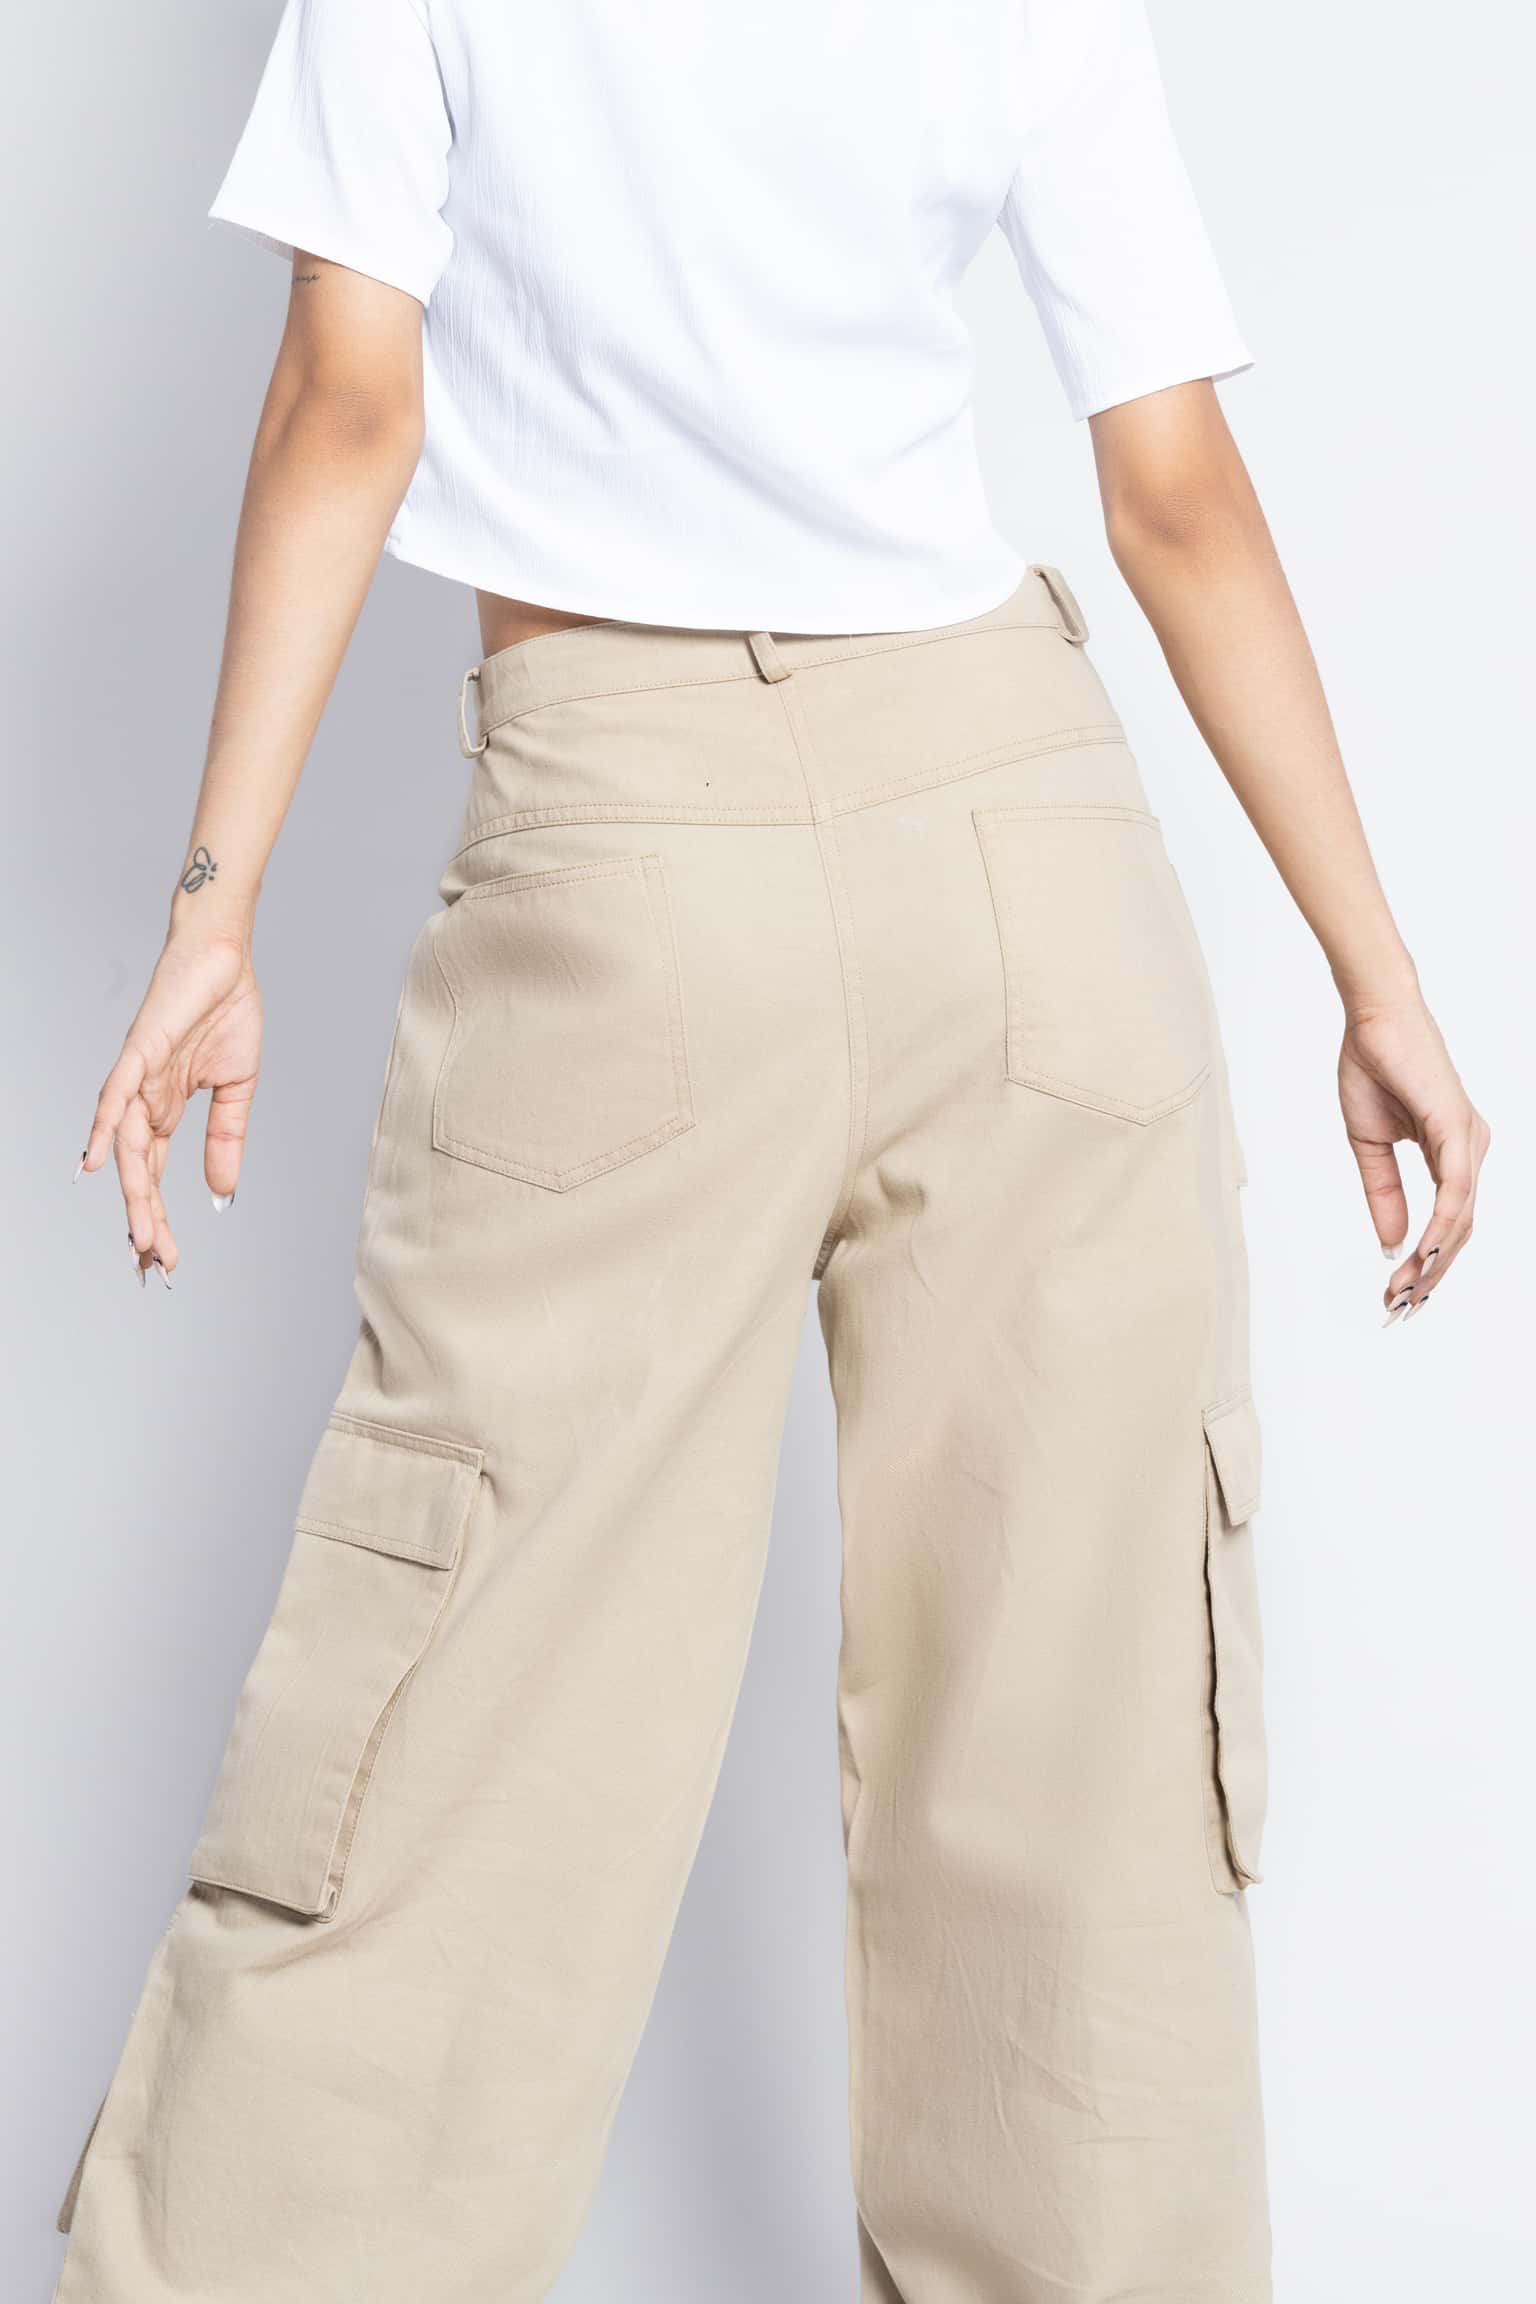 2 Pcs Set Mens Linen Casual man Suit Long Sleeve Cargo Pants men Shirts+ Trousers | eBay